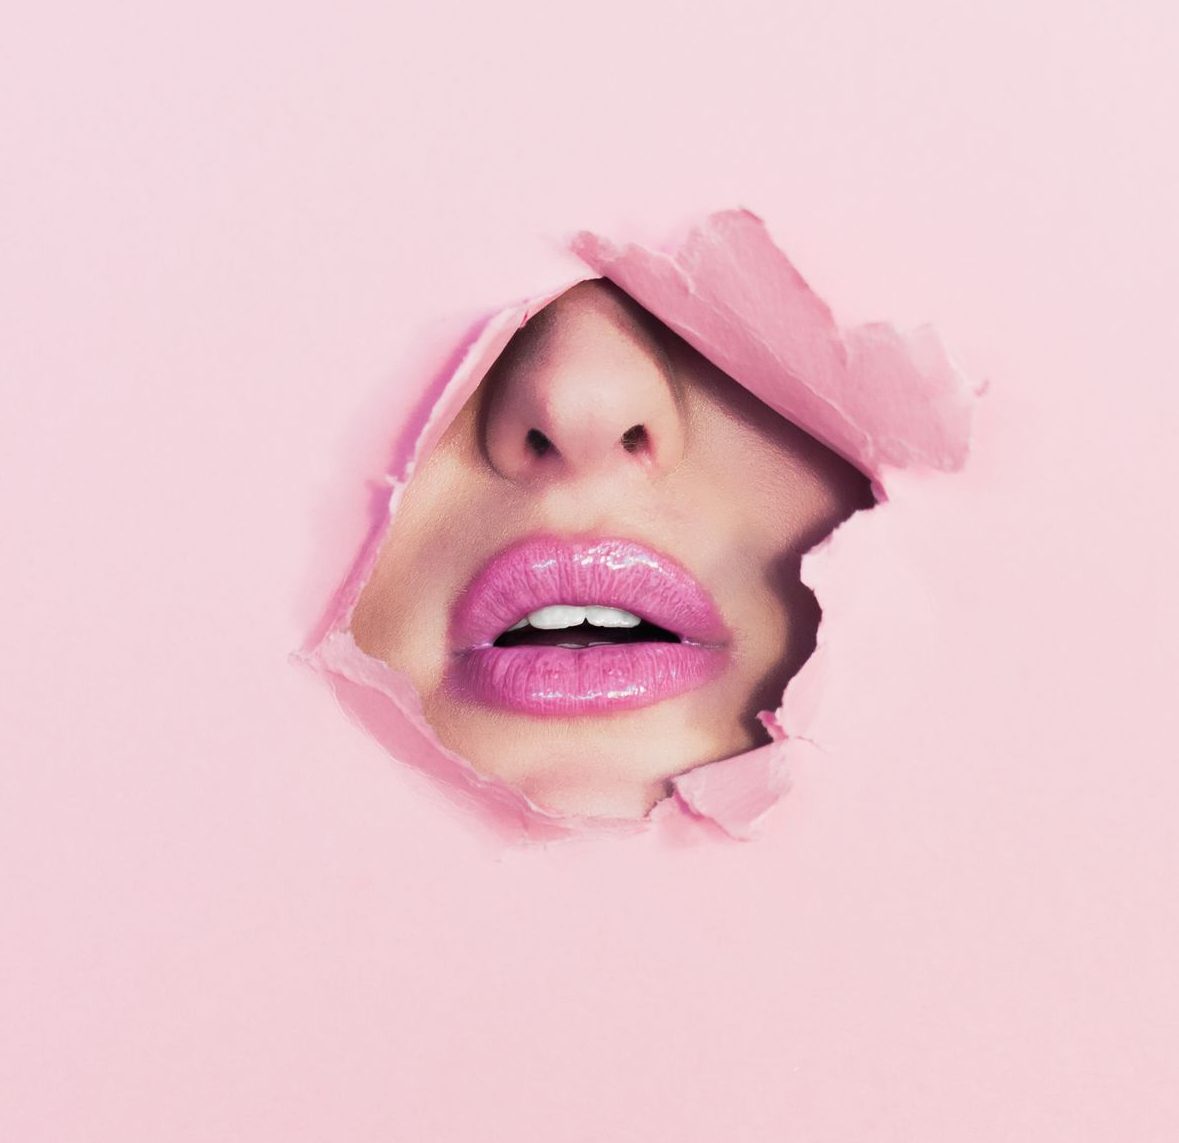 Teil eines weiblichen Gesichts ist durch Loch in rosa Wand zu sehen